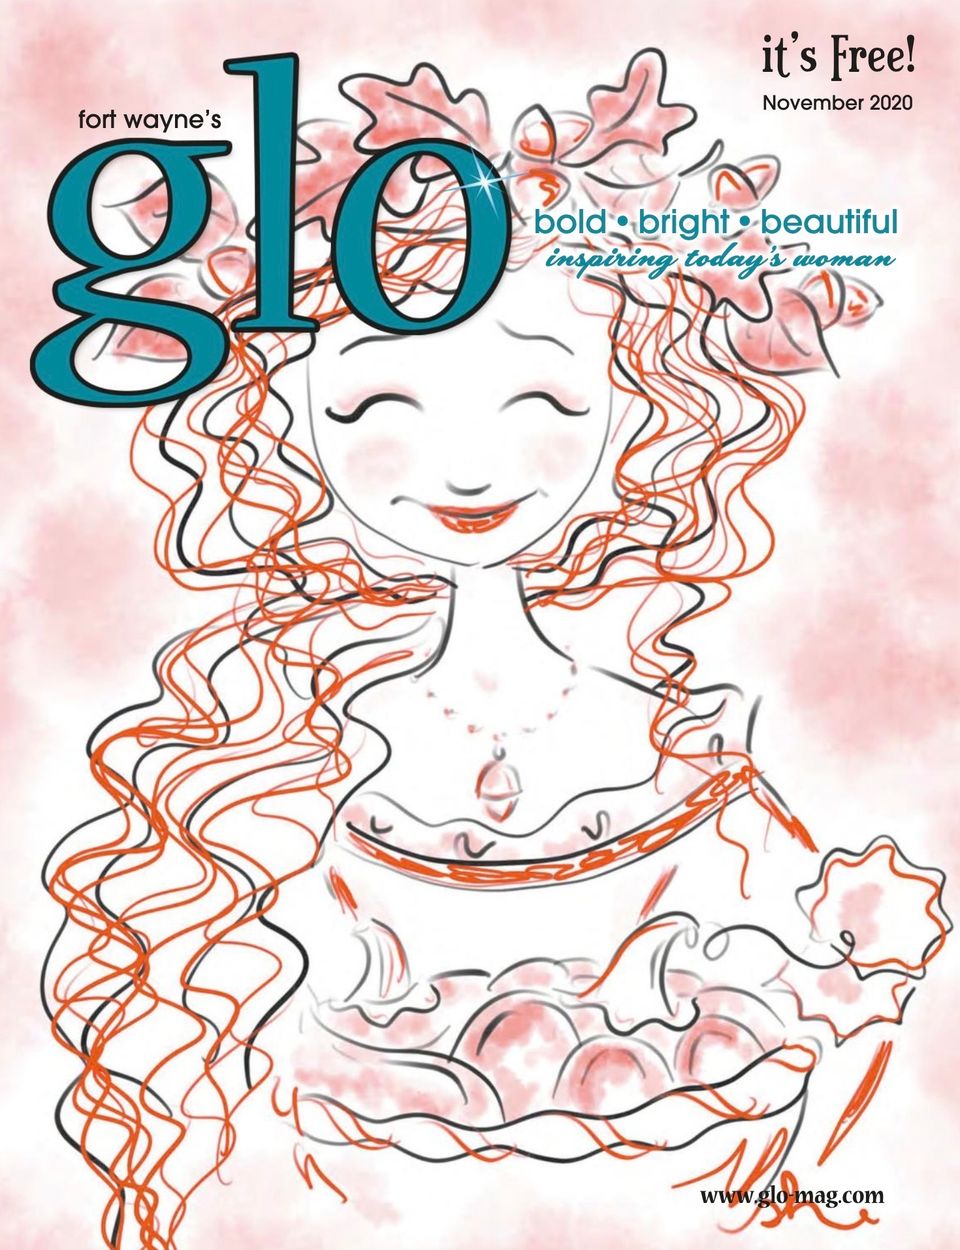 Nov 2020 cover